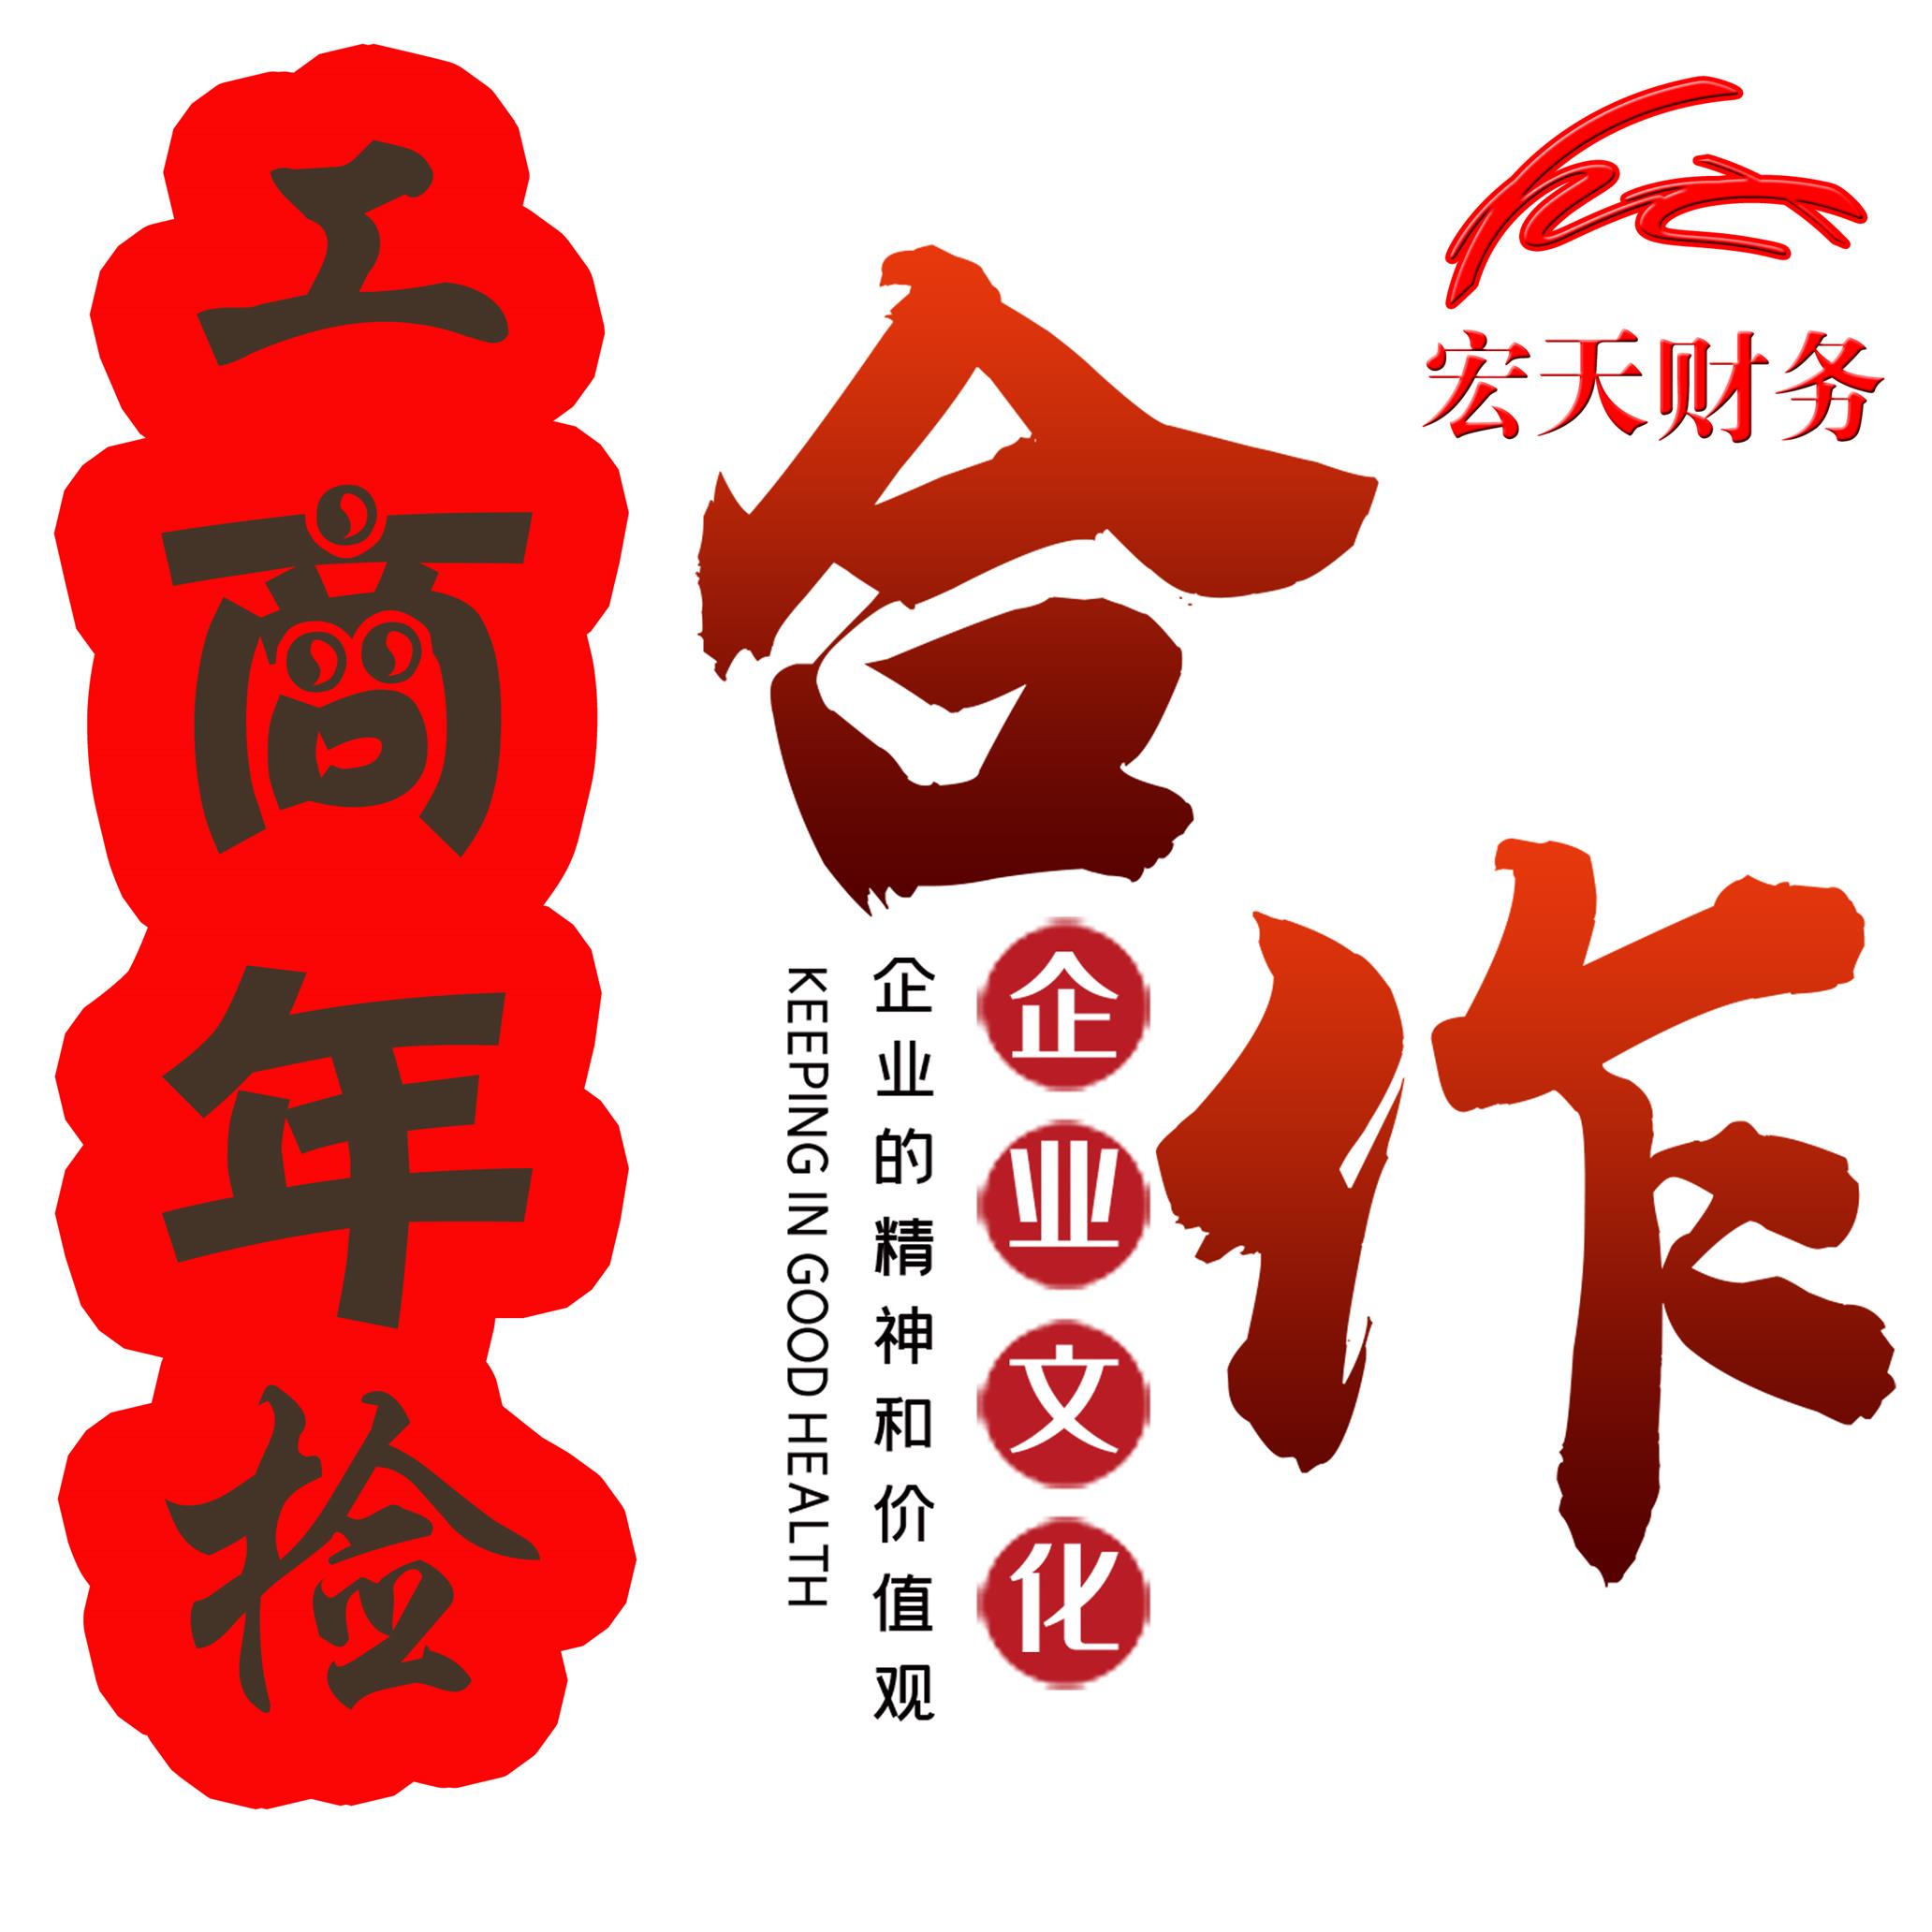 广州市 工商网上年检网站 广州宏天财务企业管理有限公司